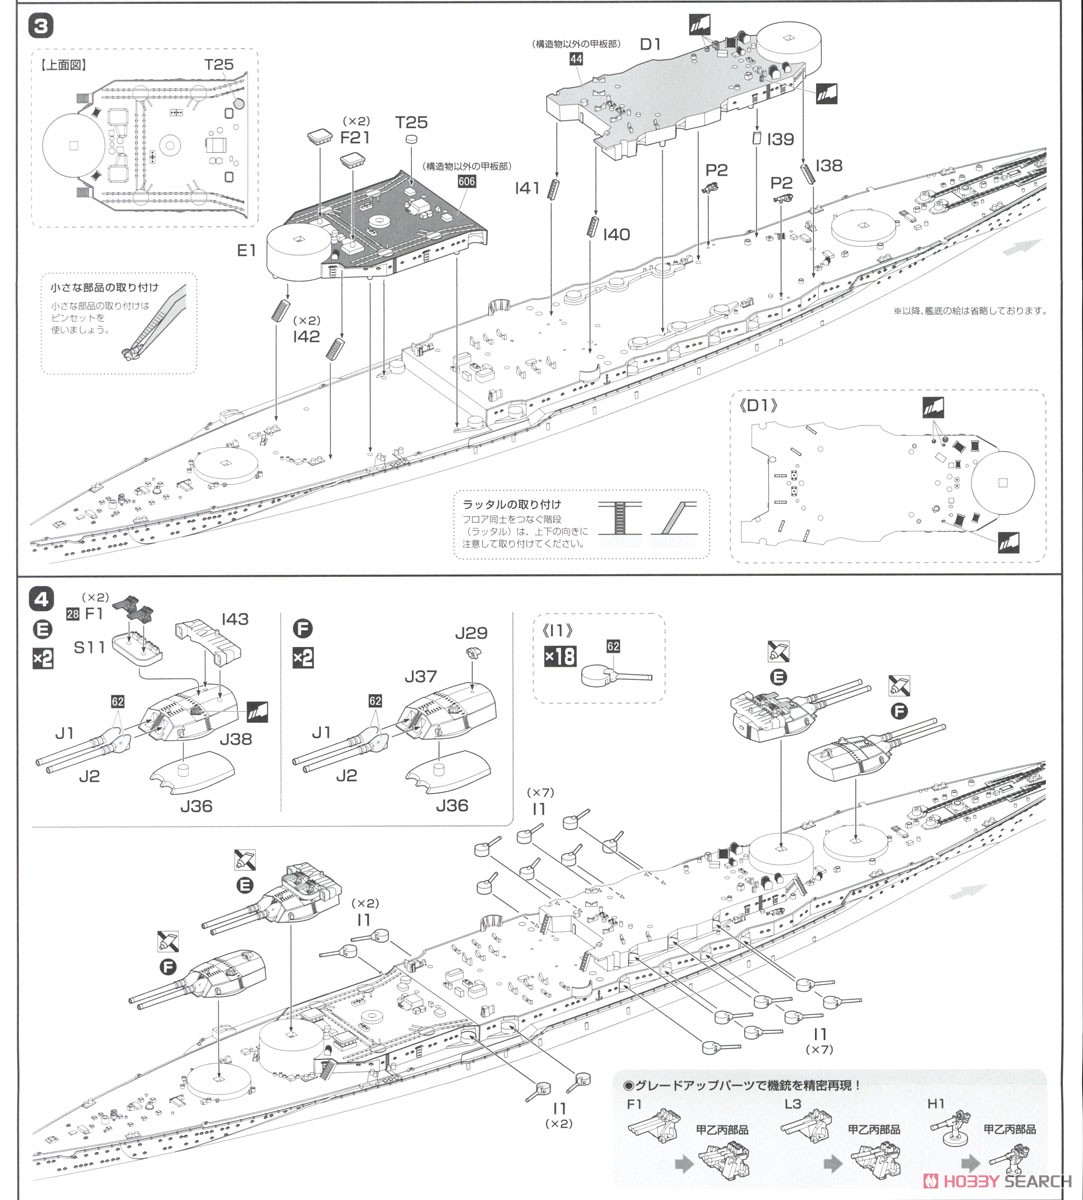 日本海軍戦艦 長門 レイテ沖海戦時 フルハルモデル (プラモデル) 設計図2